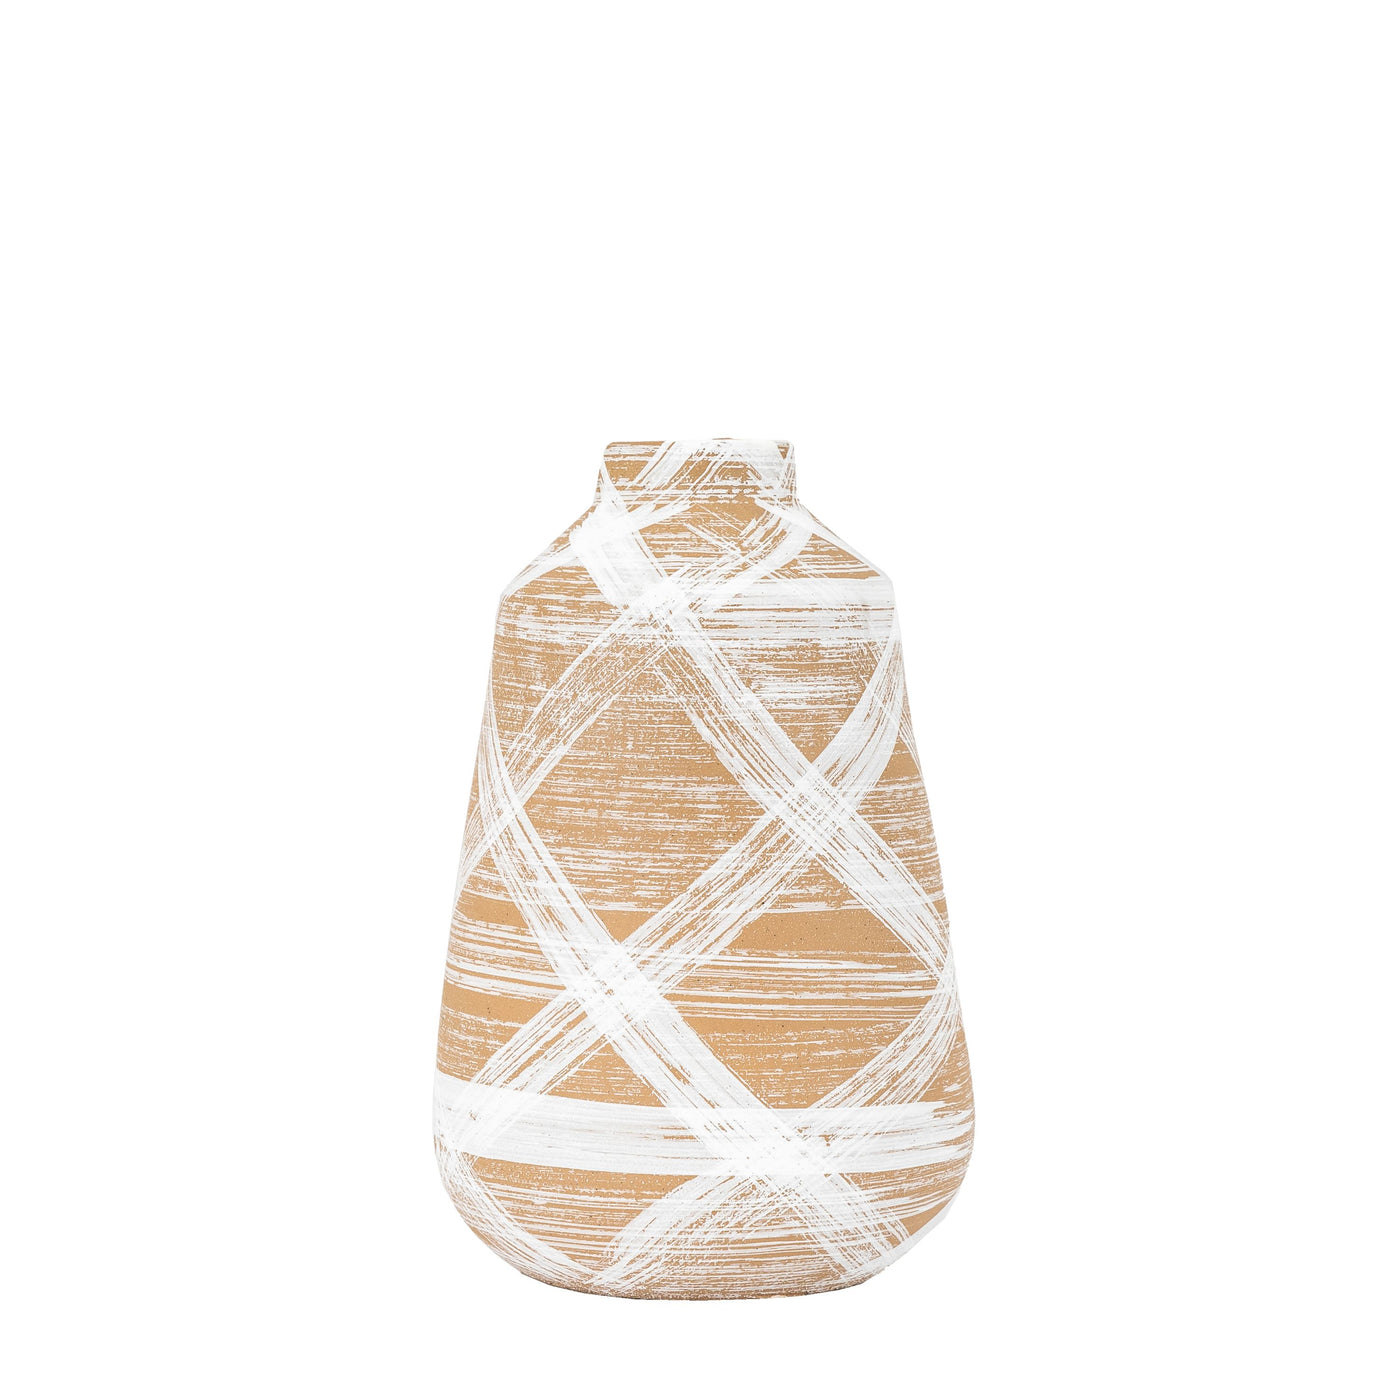 Egypt Vase - Large